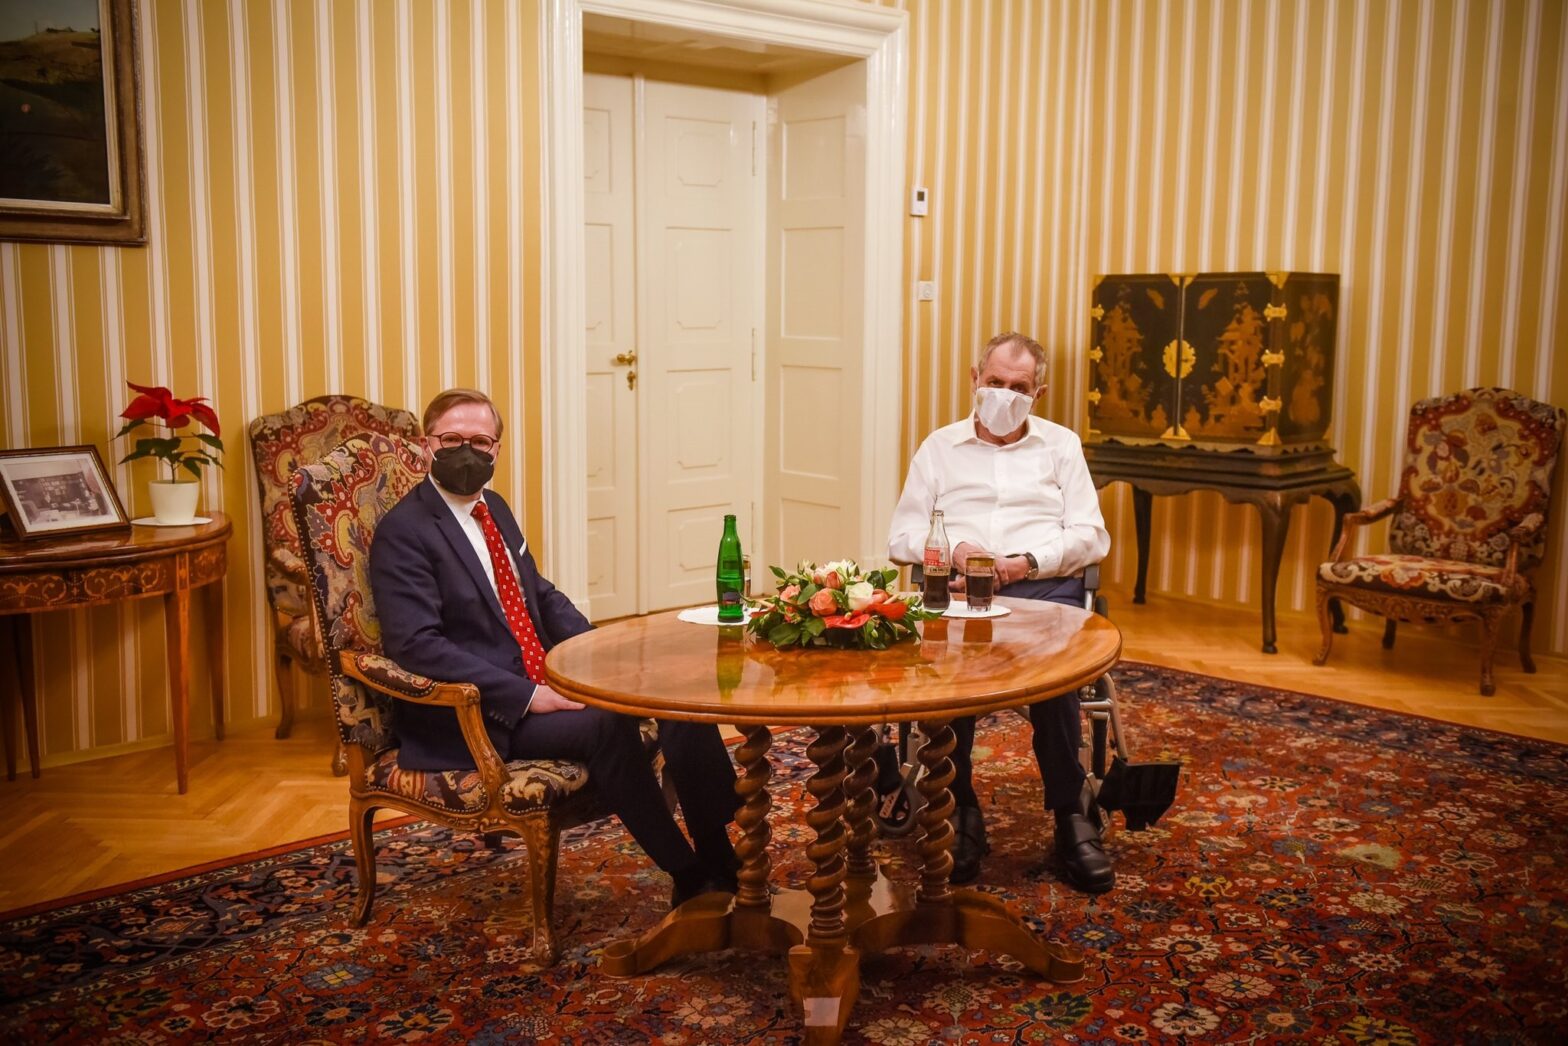 Der designierte Premier Fiala (ODS) bei Verhandlungen mit Präsident Zeman über die neue Regierung. Foto: Twitter/ Jiří Ovčáček